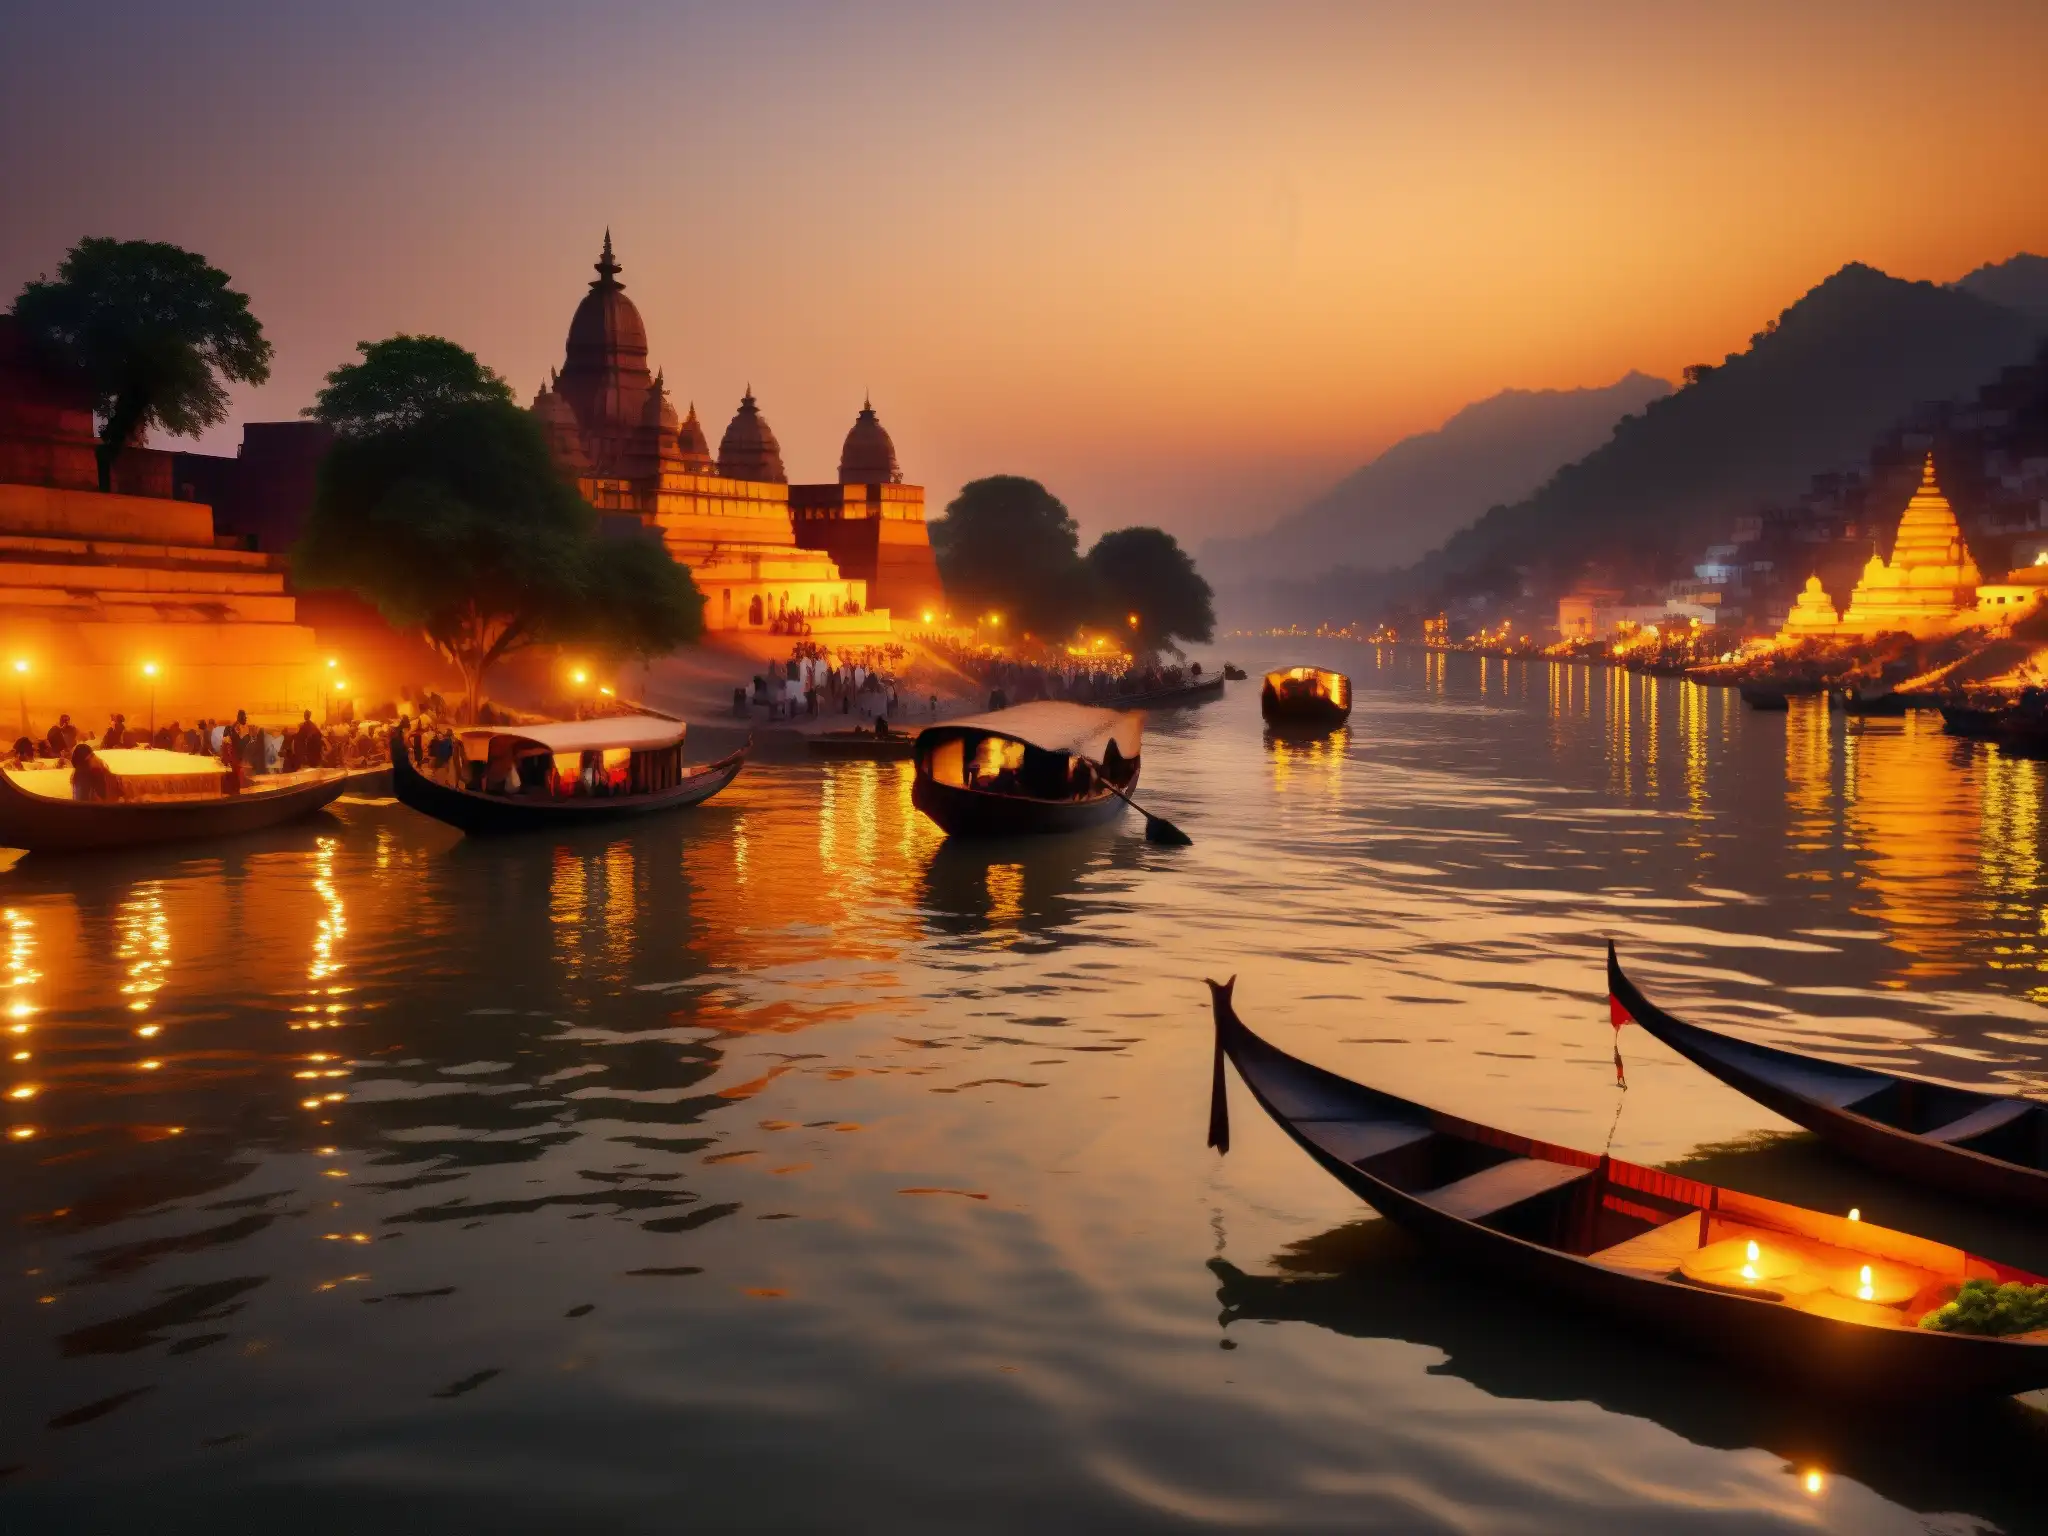 Imagen detallada del Ganges al atardecer, con templos antiguos y ghats en la ribera